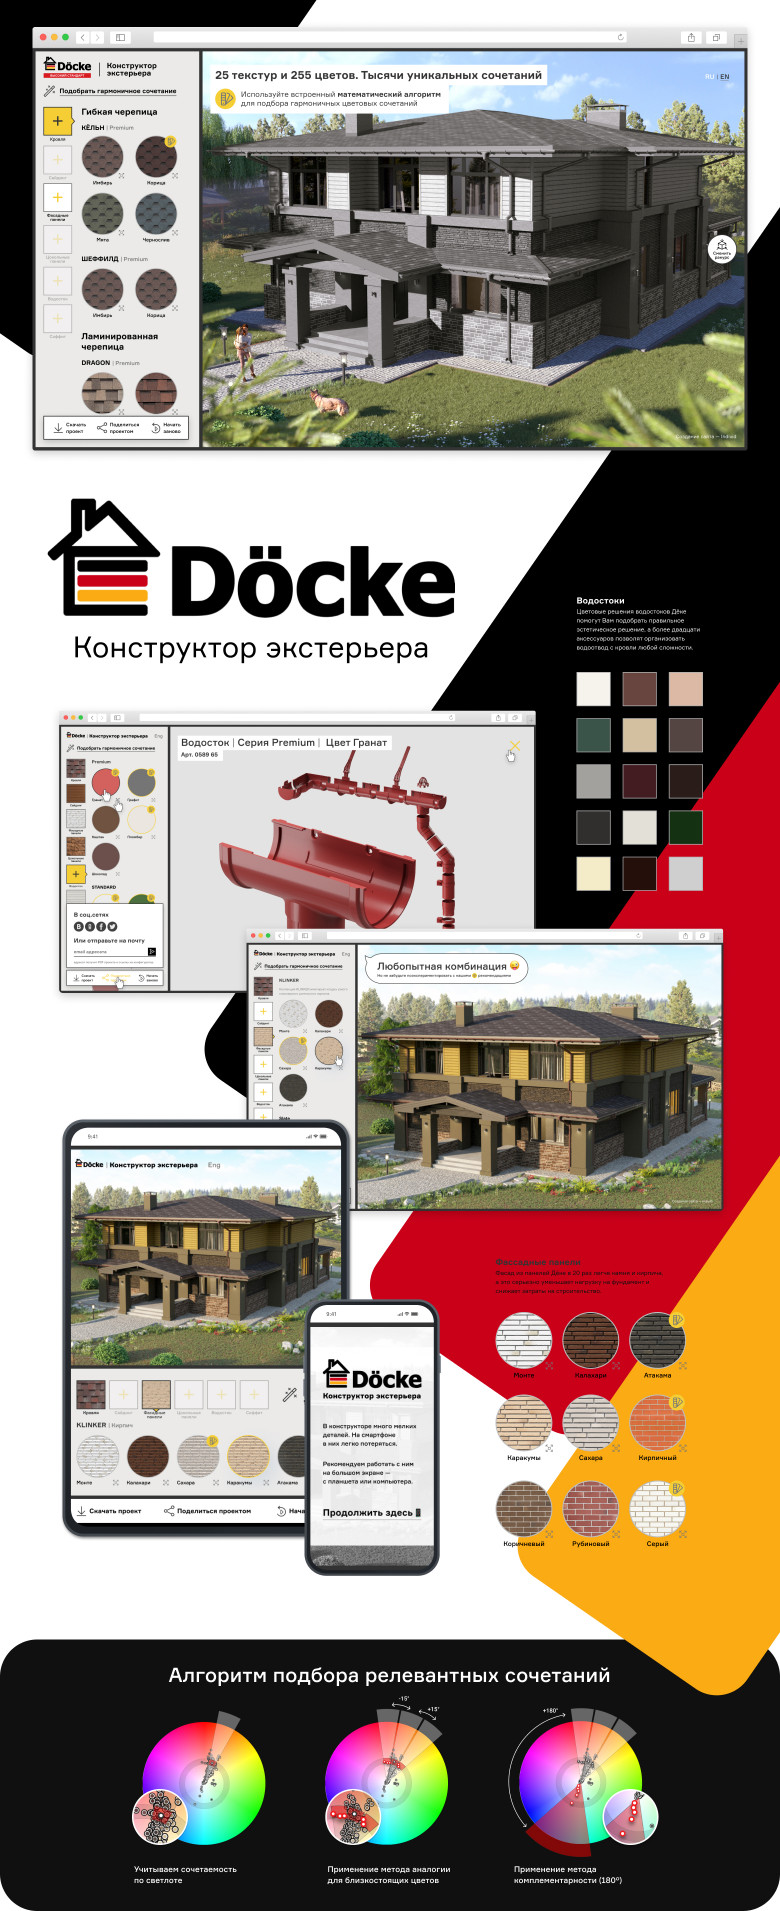 Онлайн-конфигуратор экстерьера коттеджа материалами компании Docke